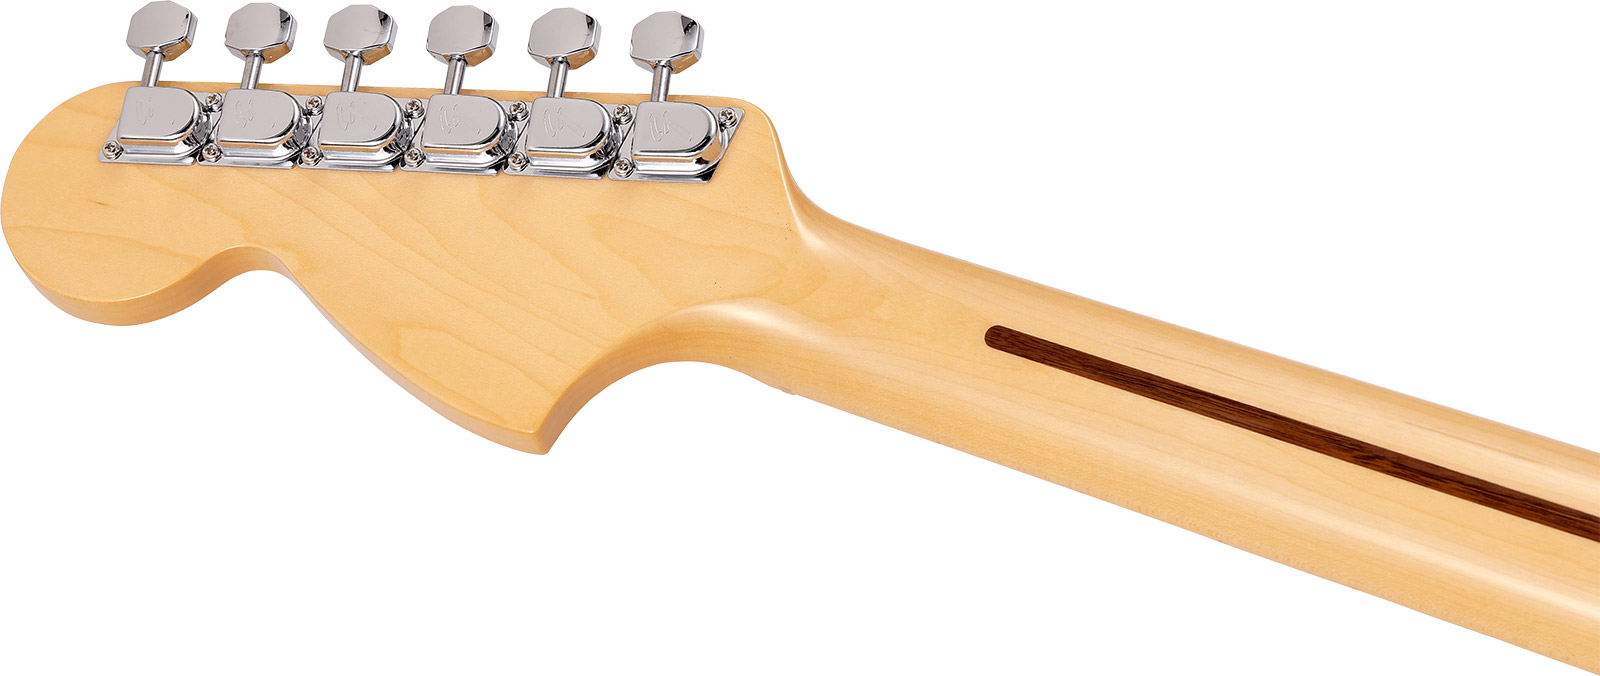 Fender Strat International Color Ltd Jap 3s Trem Mn - Monaco Yellow - Guitare Électrique Forme Str - Variation 3